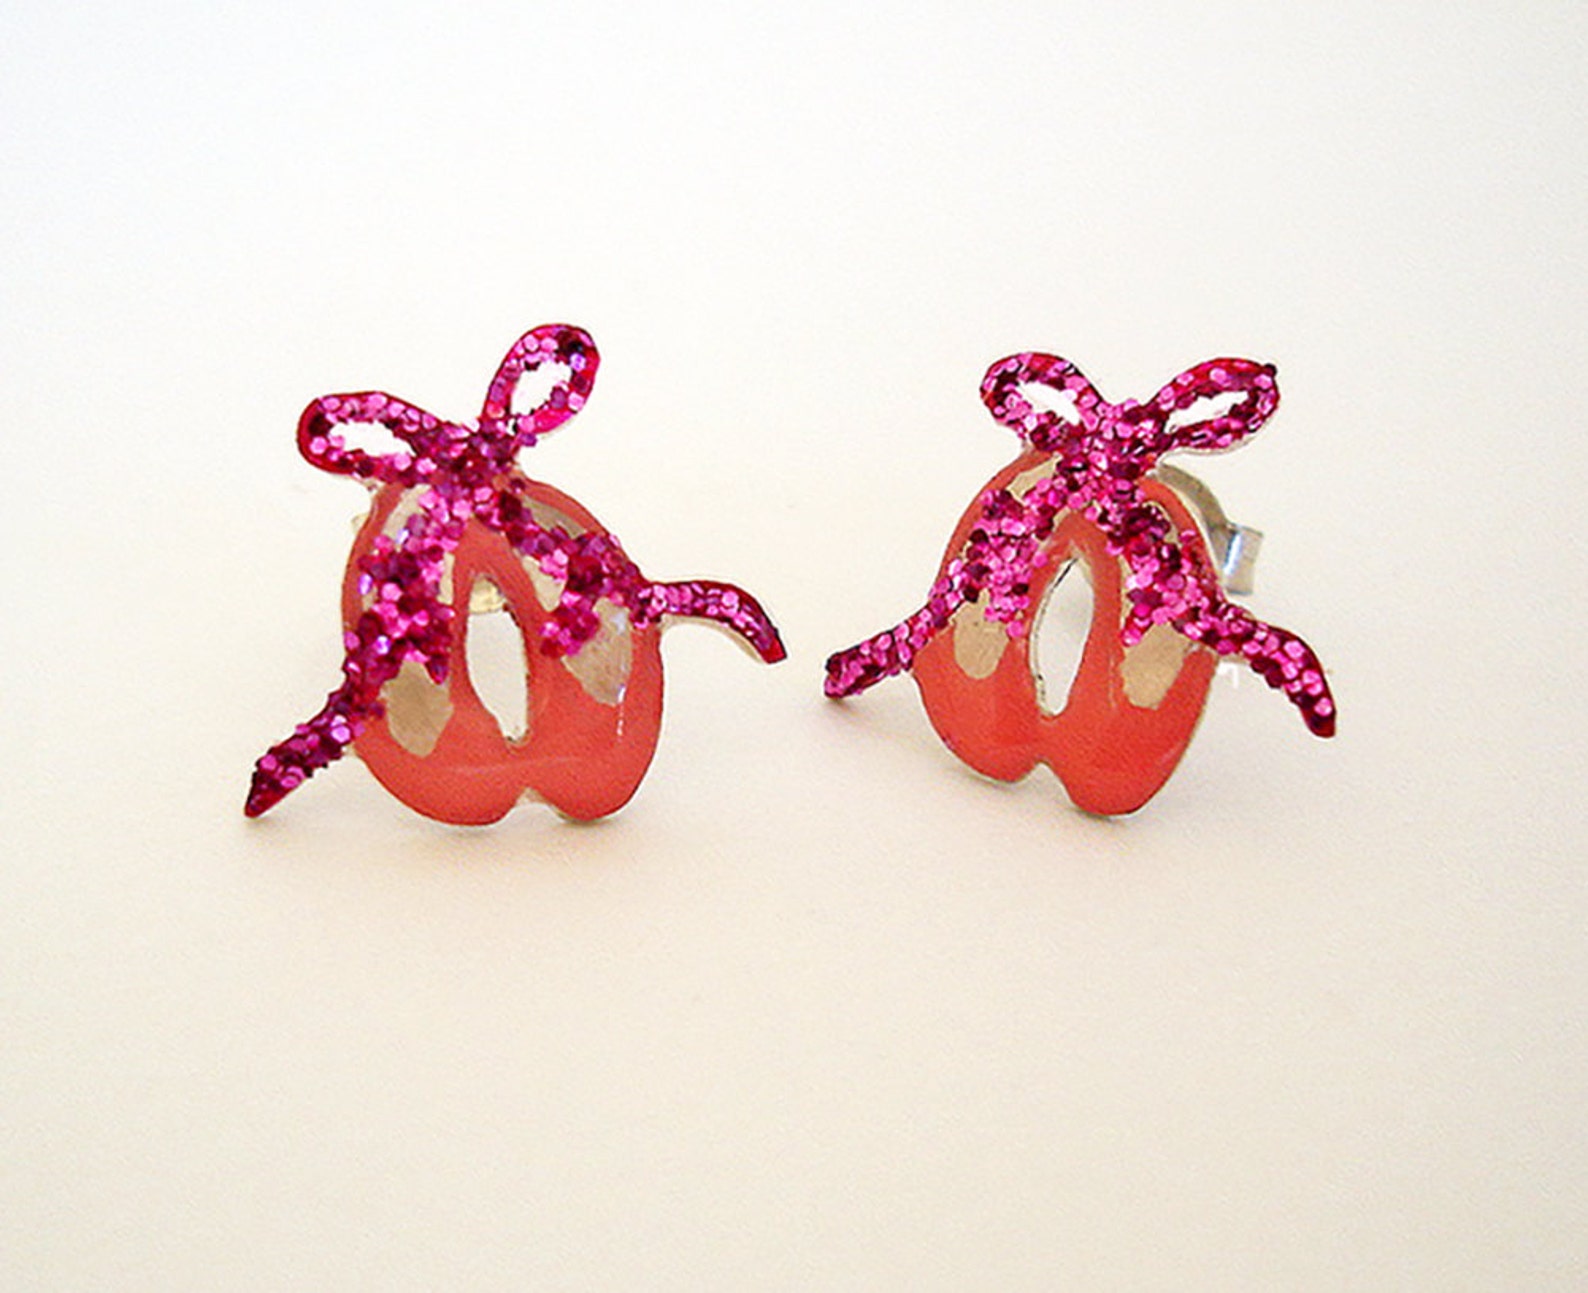 ballerina earrings - ballet shoes earrings - ballerina jewelry - enamel earrings studs - ballerina gift - girls sterling silver